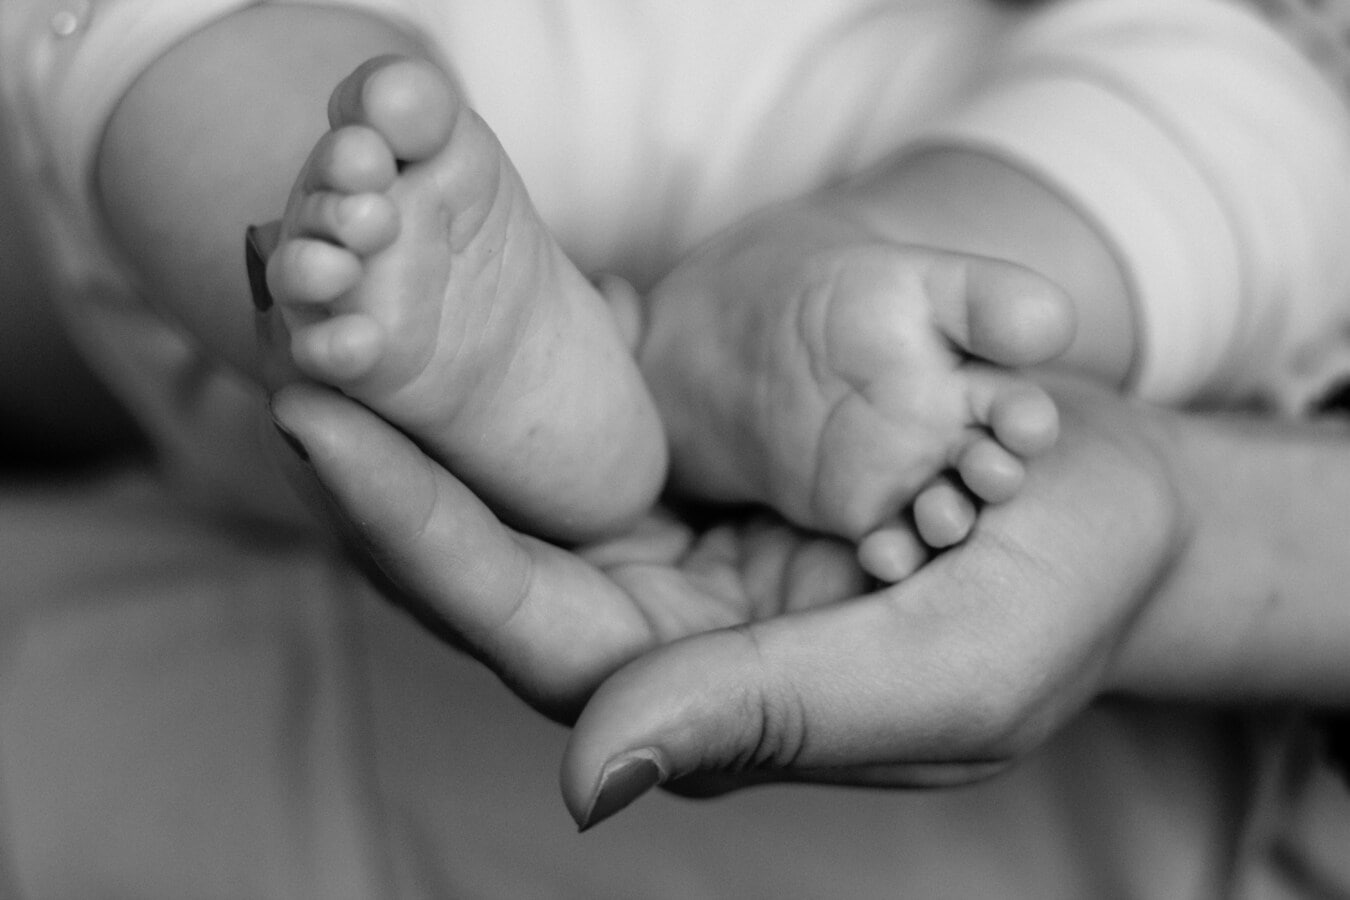 ทารกแรกเกิด, เด็ก, ฟุต, เด็กวัยหัดเดิน, ทารก, ขา, เท้าเปล่า, เท้า, แม่, โฮลดิ้ง